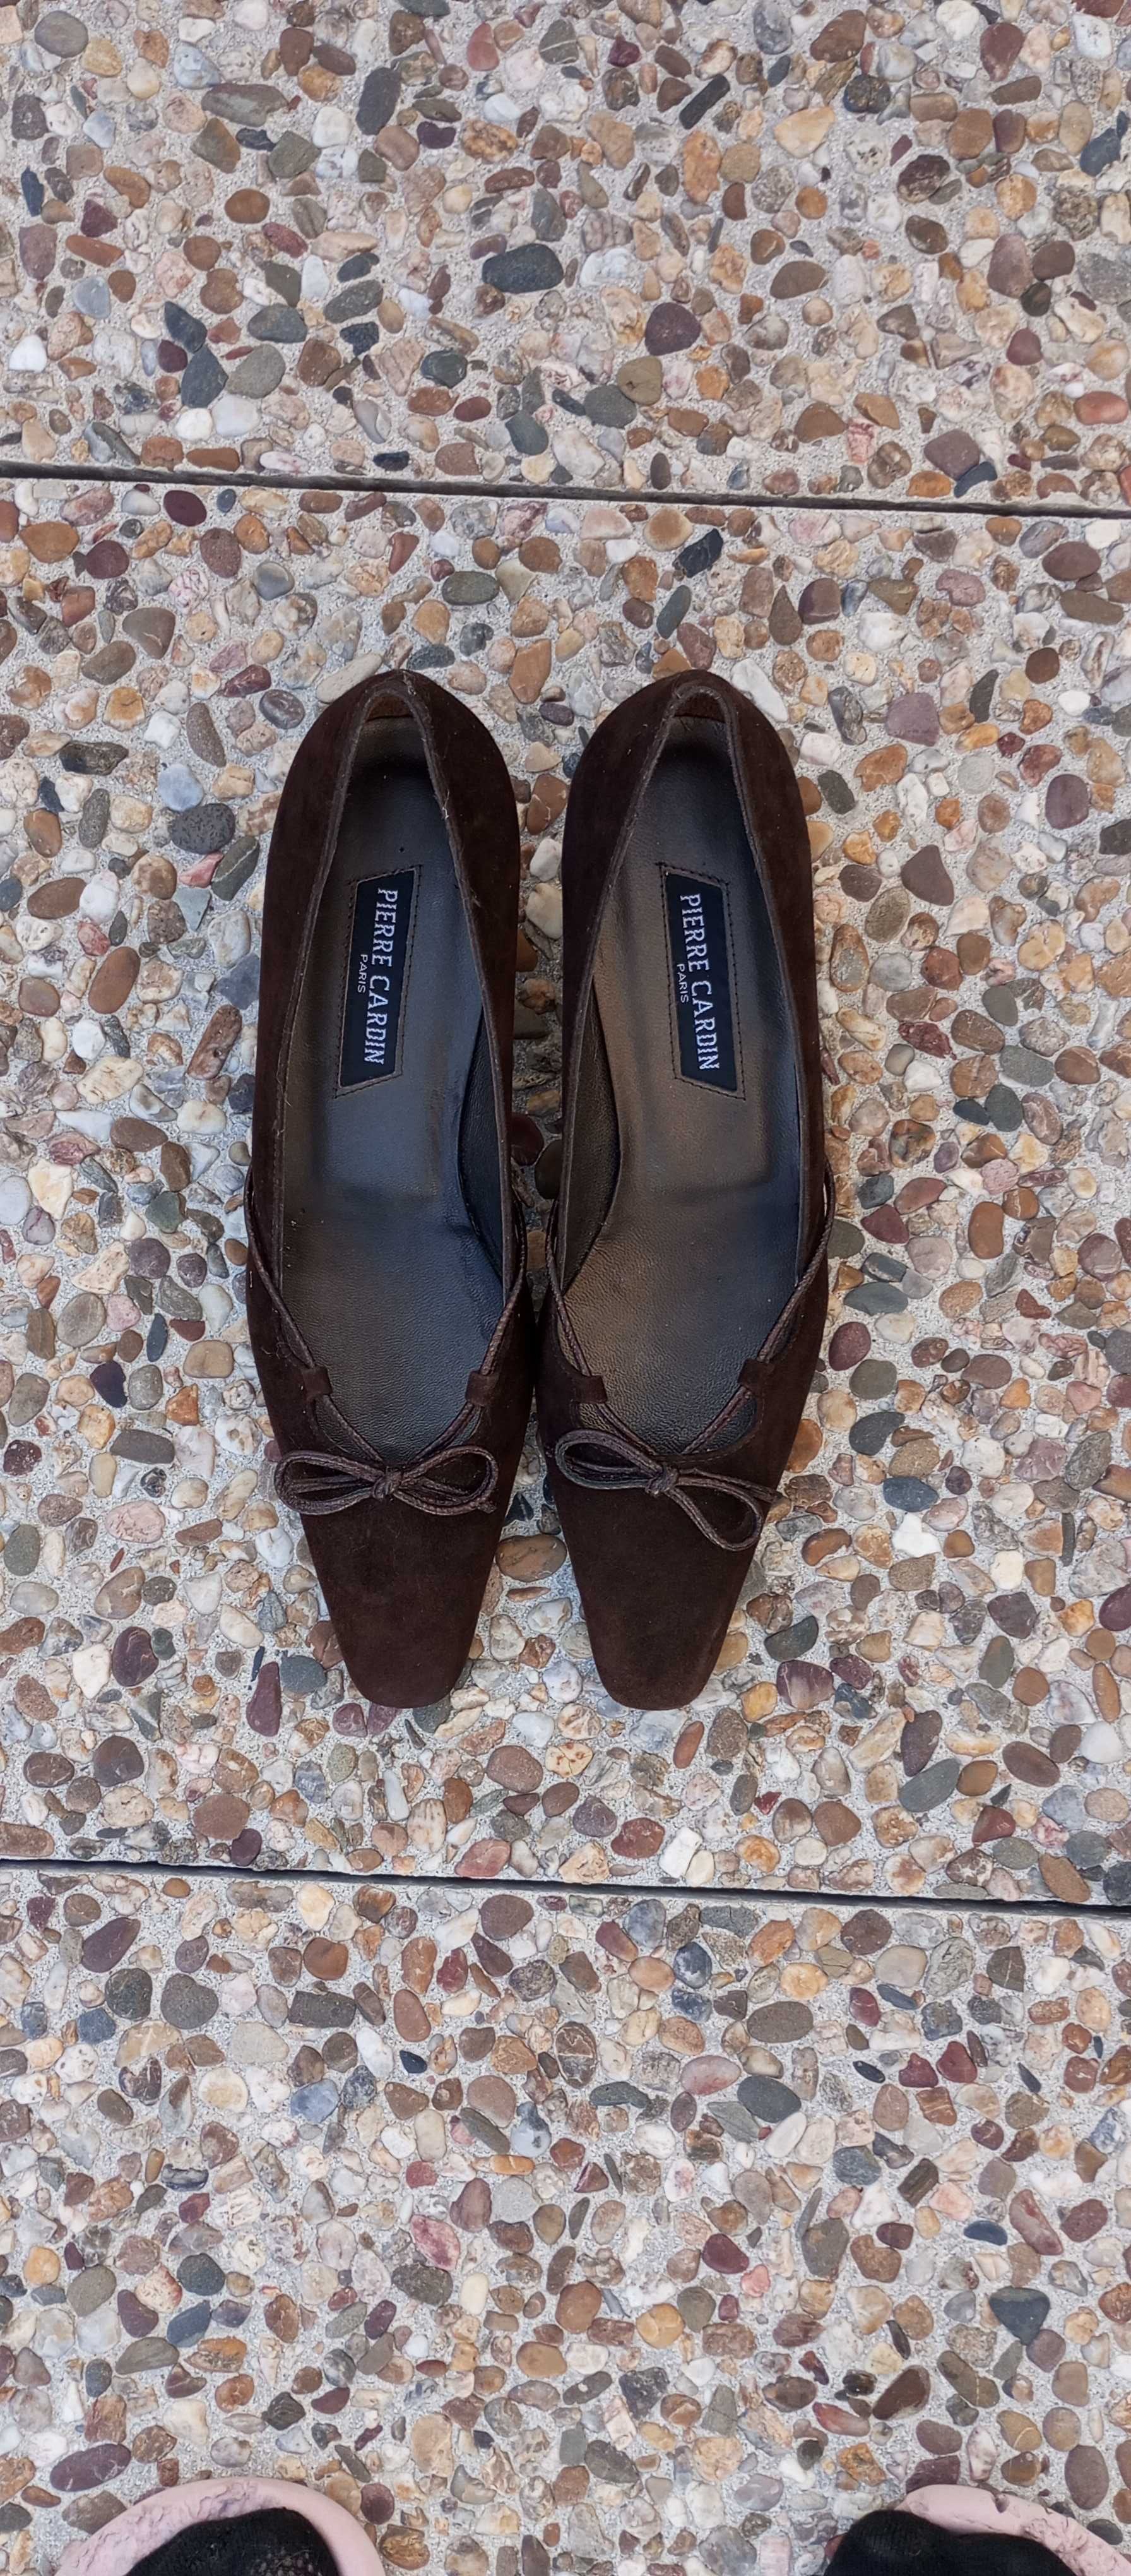 Sapato PIERRE CARDIN castanho escuro camurça Novo, muito elegante